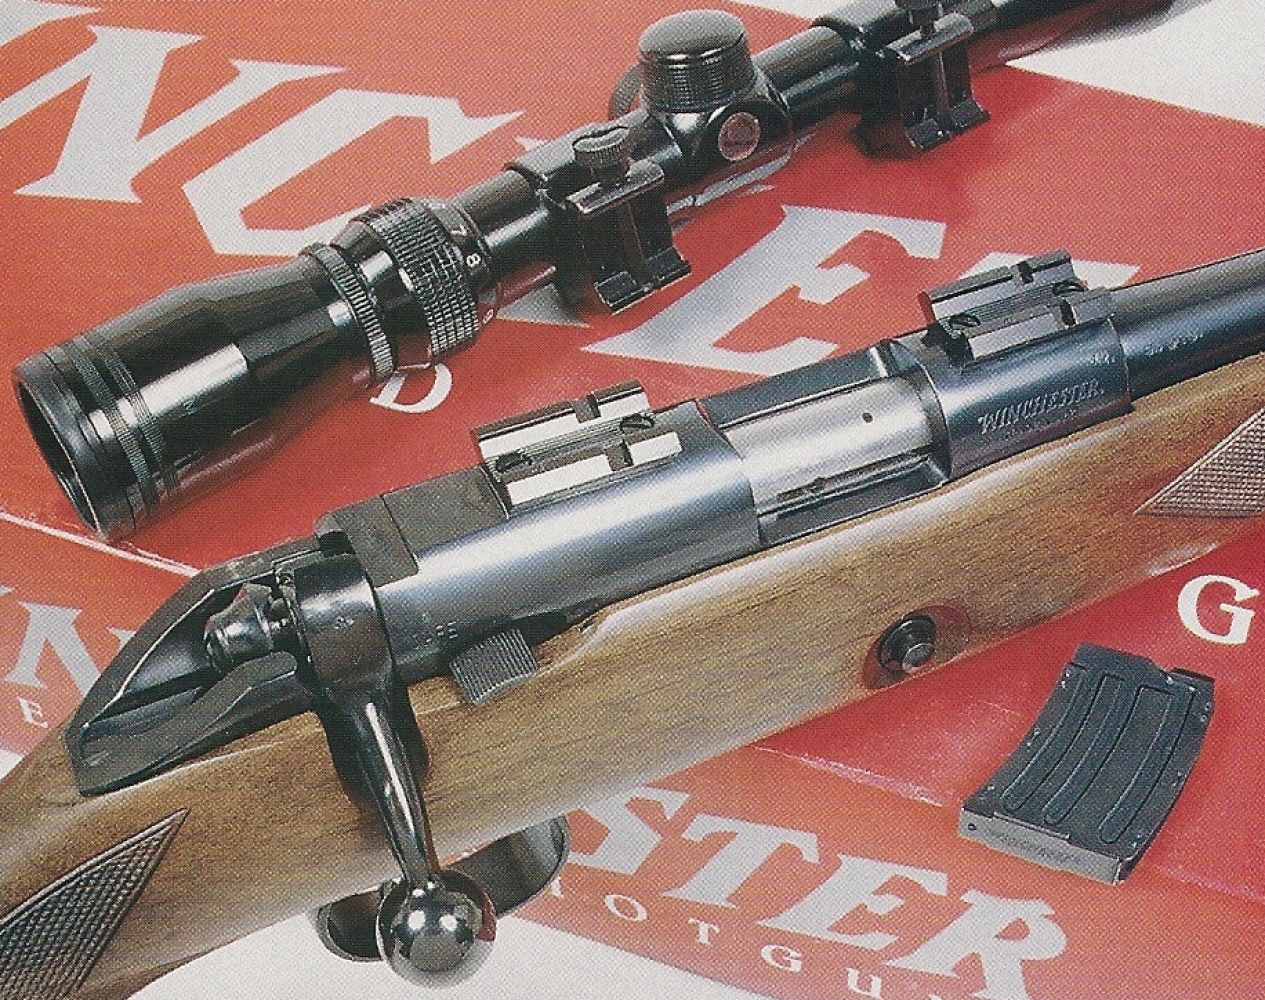 Cette arme de très belle facture, réalisée en petite série, se présente comme une réduction en petit calibre annulaire de la légendaire Winchester modèle 70, carabine de grande chasse à percussion centrale.